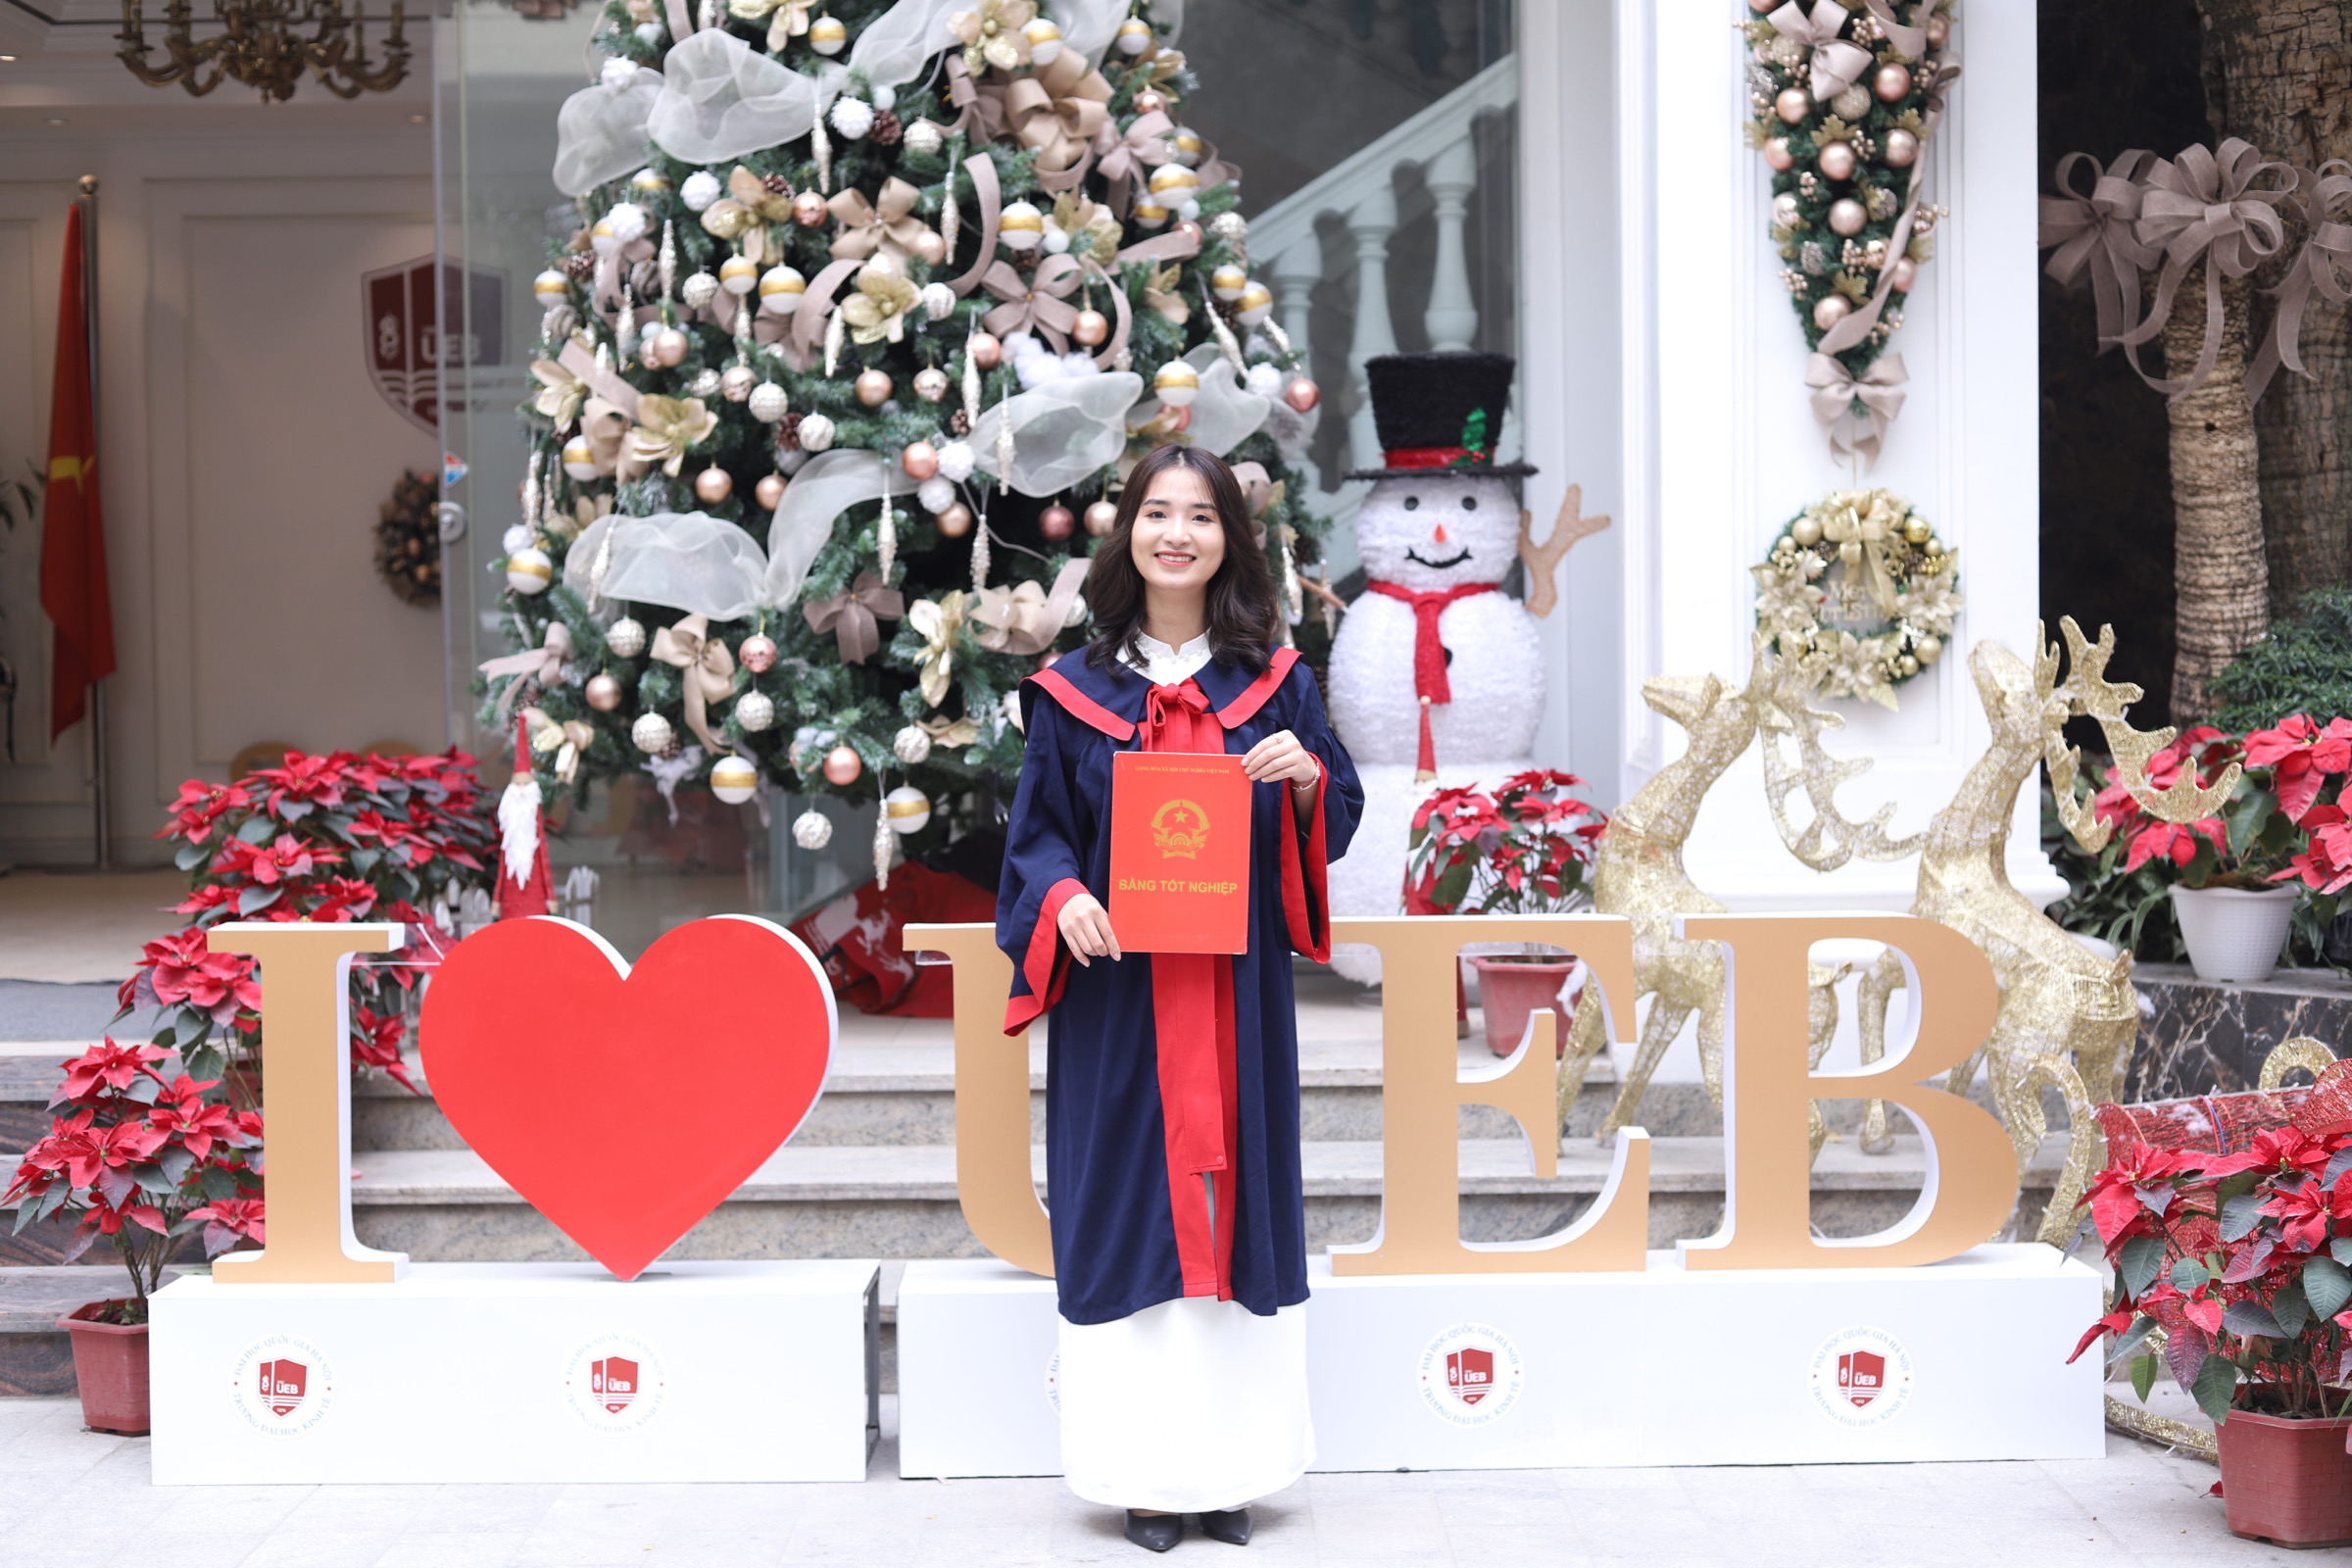 Vũ Hồng Tươi - Sinh viên ưu tú tốt nghiệp loại xuất sắc của trường Đại học Kinh tế ĐHQGHN chia sẻ bài học thành công